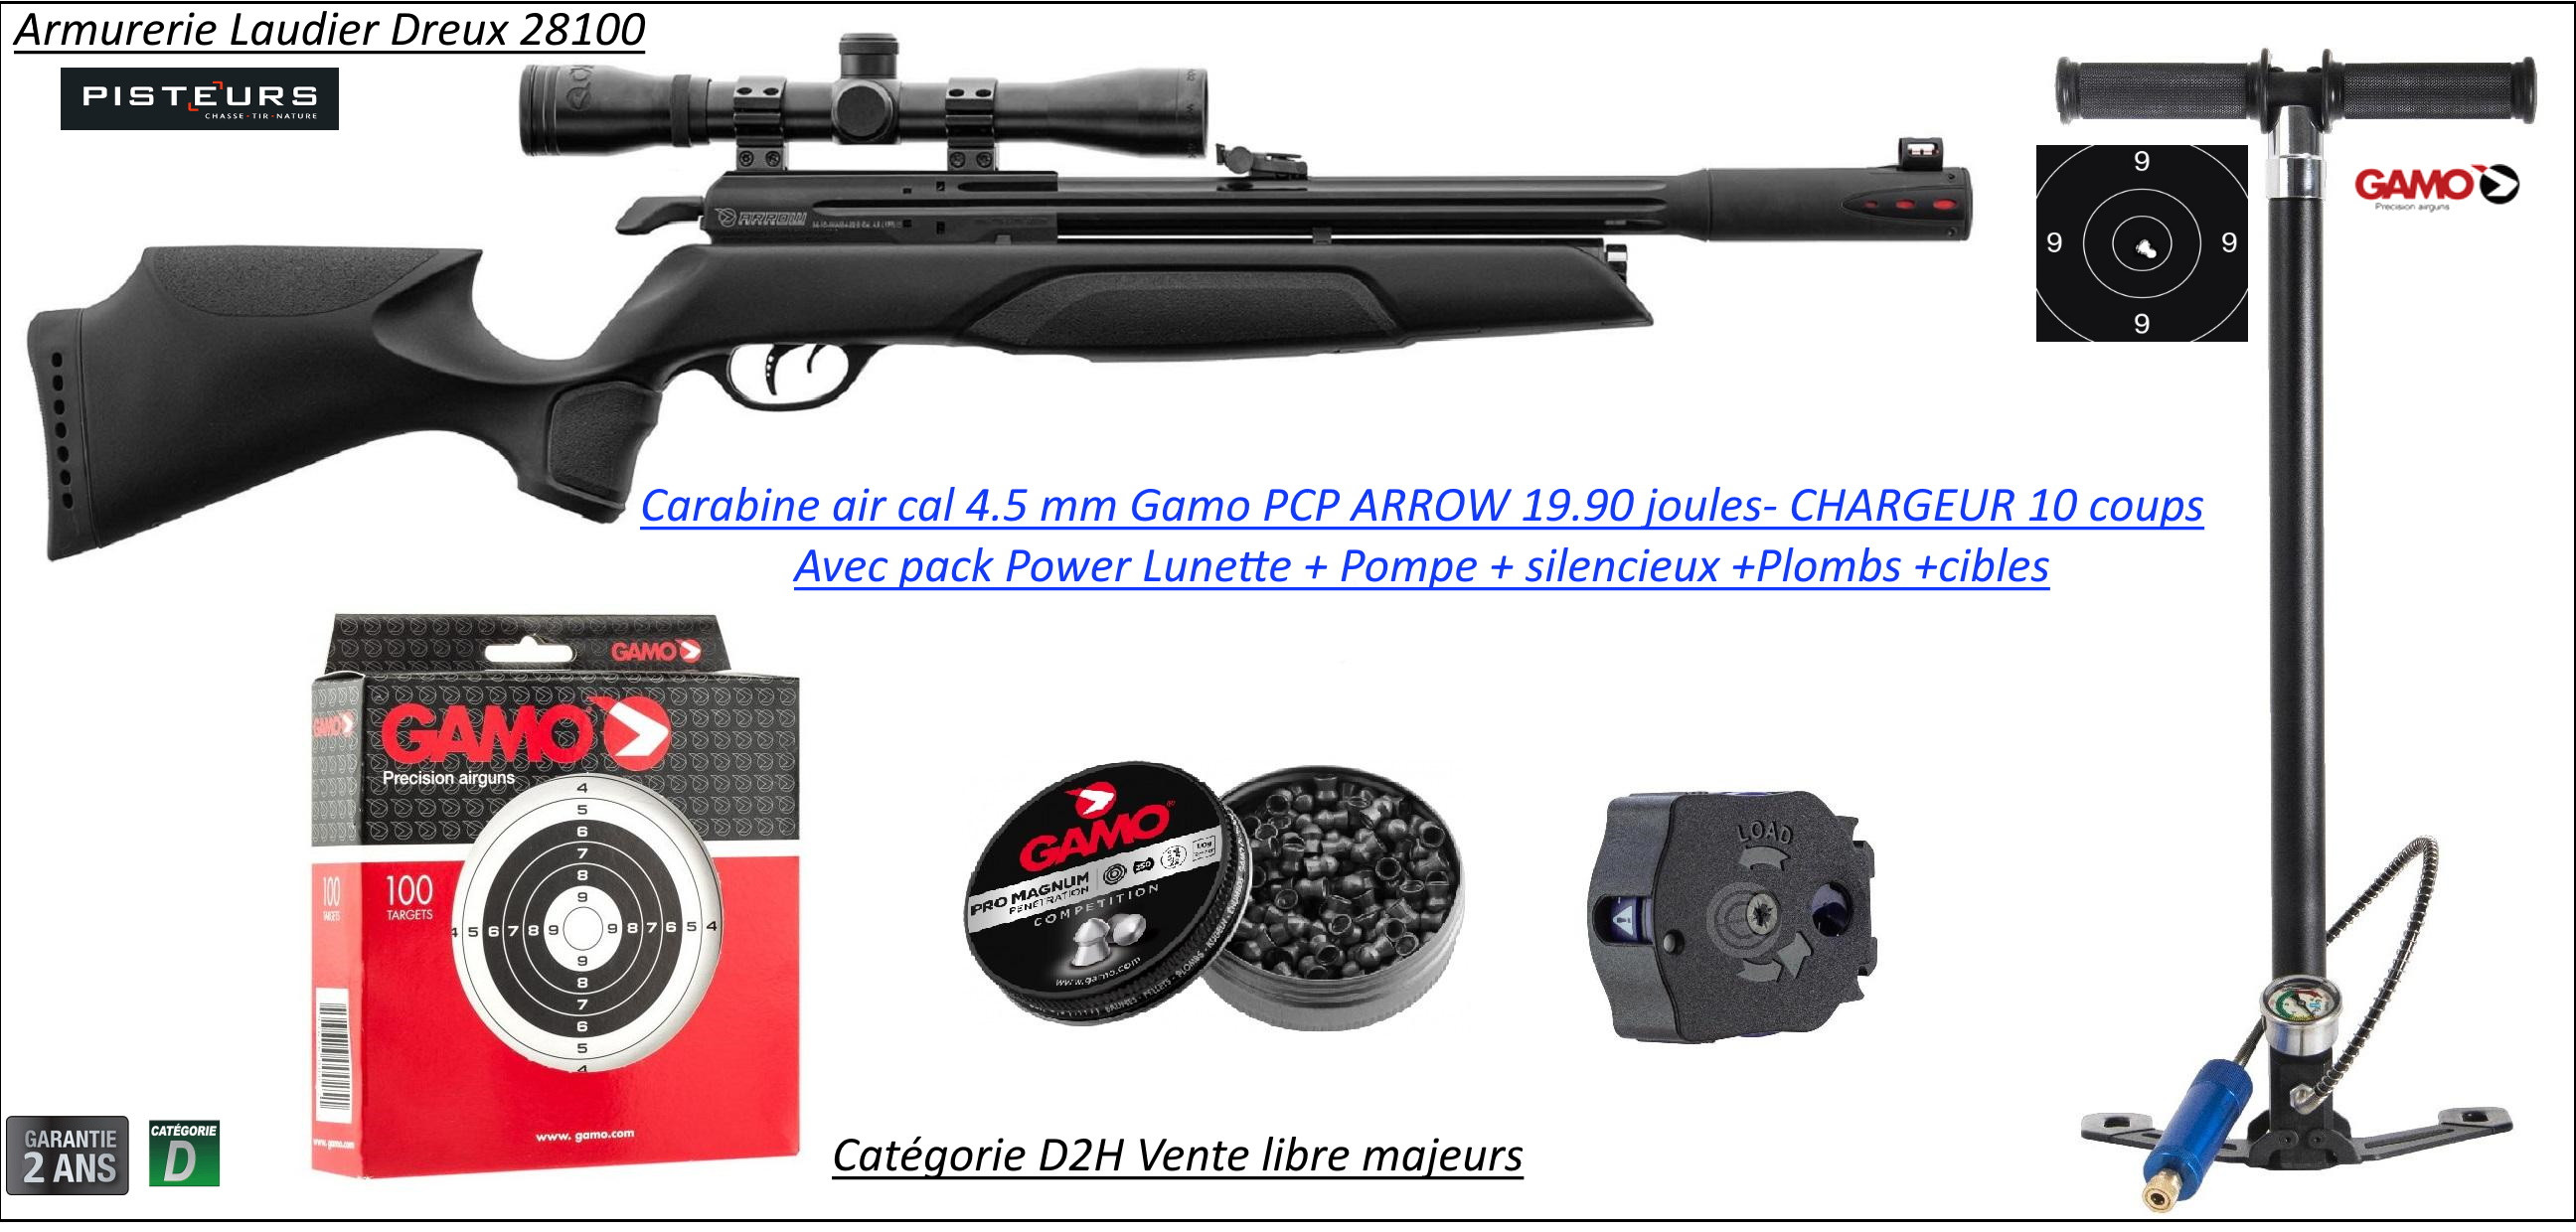 Carabine air Pré comprimé PCP Gamo ARROW Calibre 4.5m/m Puissance 19.90 joules 10 coups-Pack  POWER LUNETTE+POMPE+plombs-Promotion-Ref PCP-G1650P